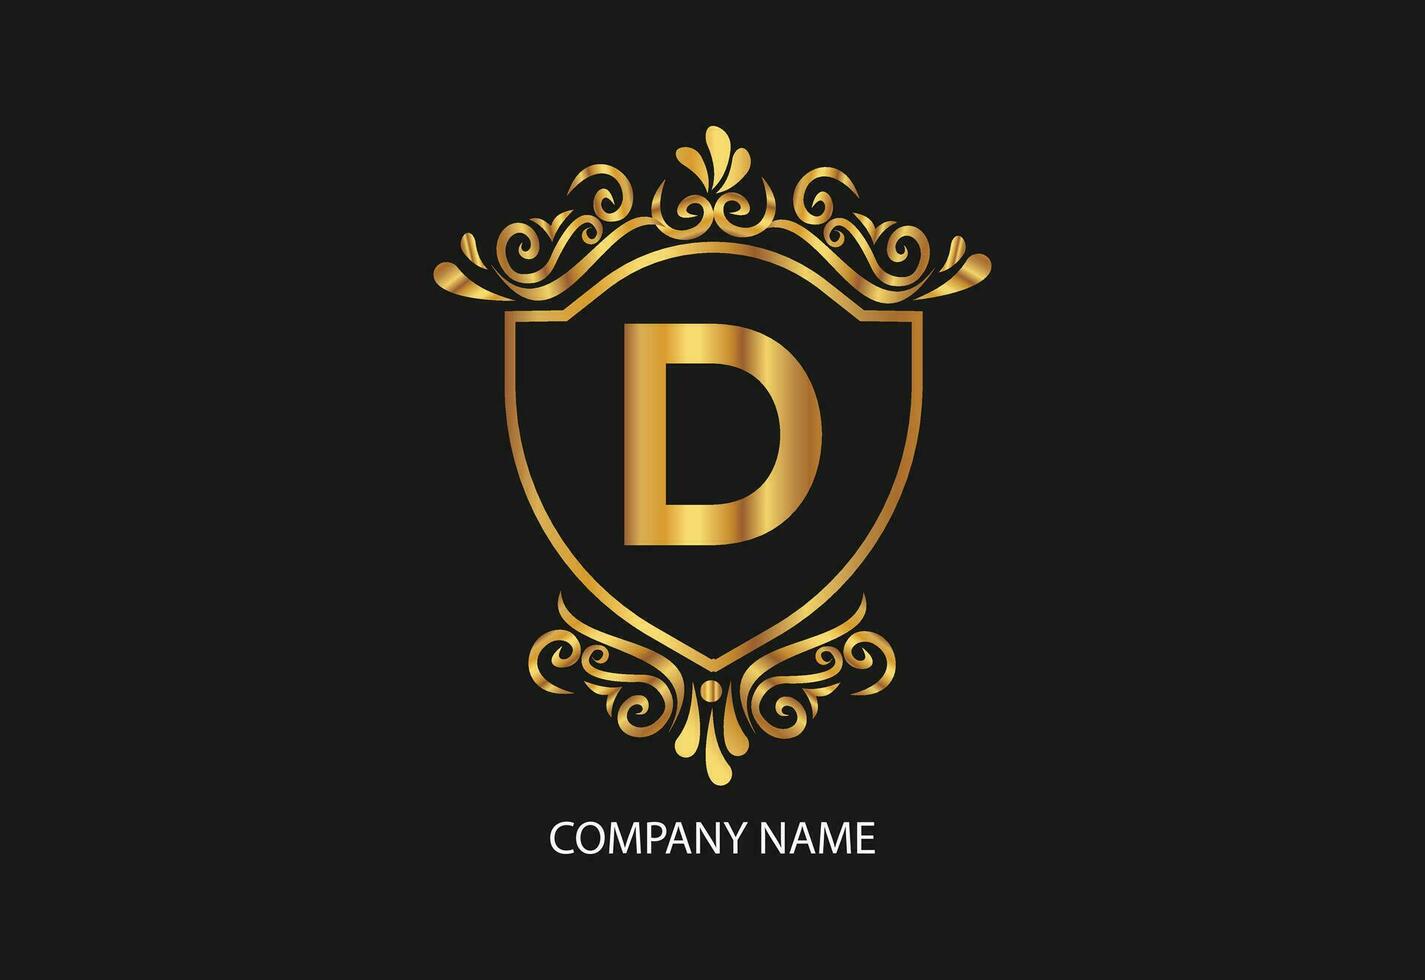 laatste d natuurlijk en biologisch logo modern ontwerp. natuurlijk logo voor branding, zakelijke identiteit en bedrijf kaart vector